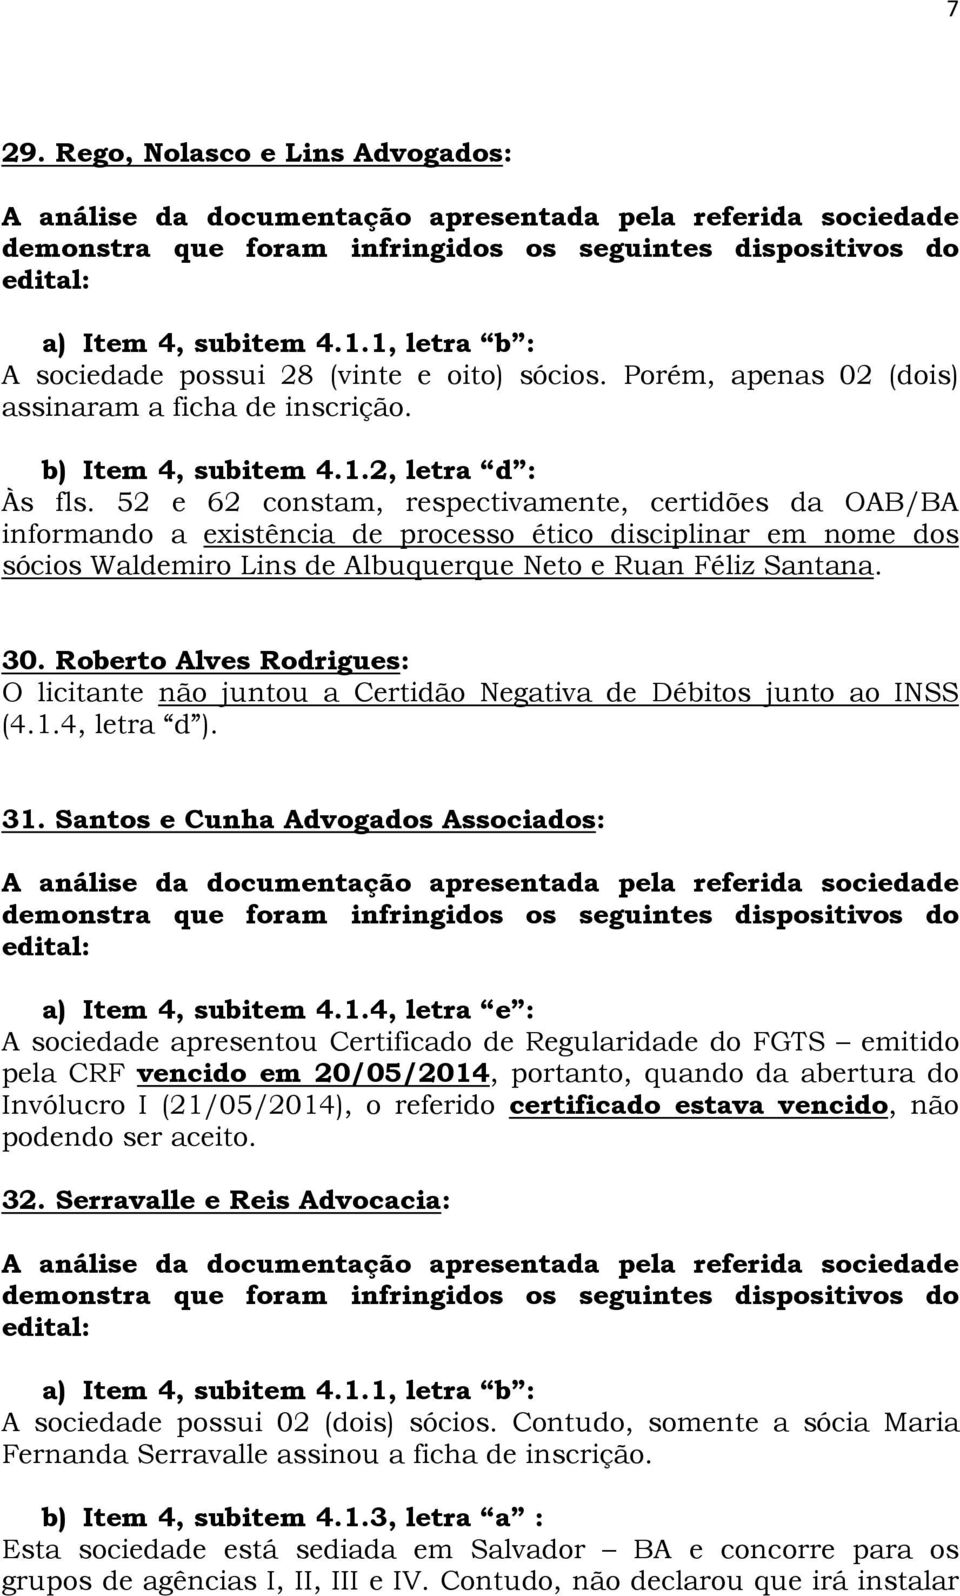 Roberto Alves Rodrigues: O licitante não juntou a Certidão Negativa de Débitos junto ao INSS (4.1.